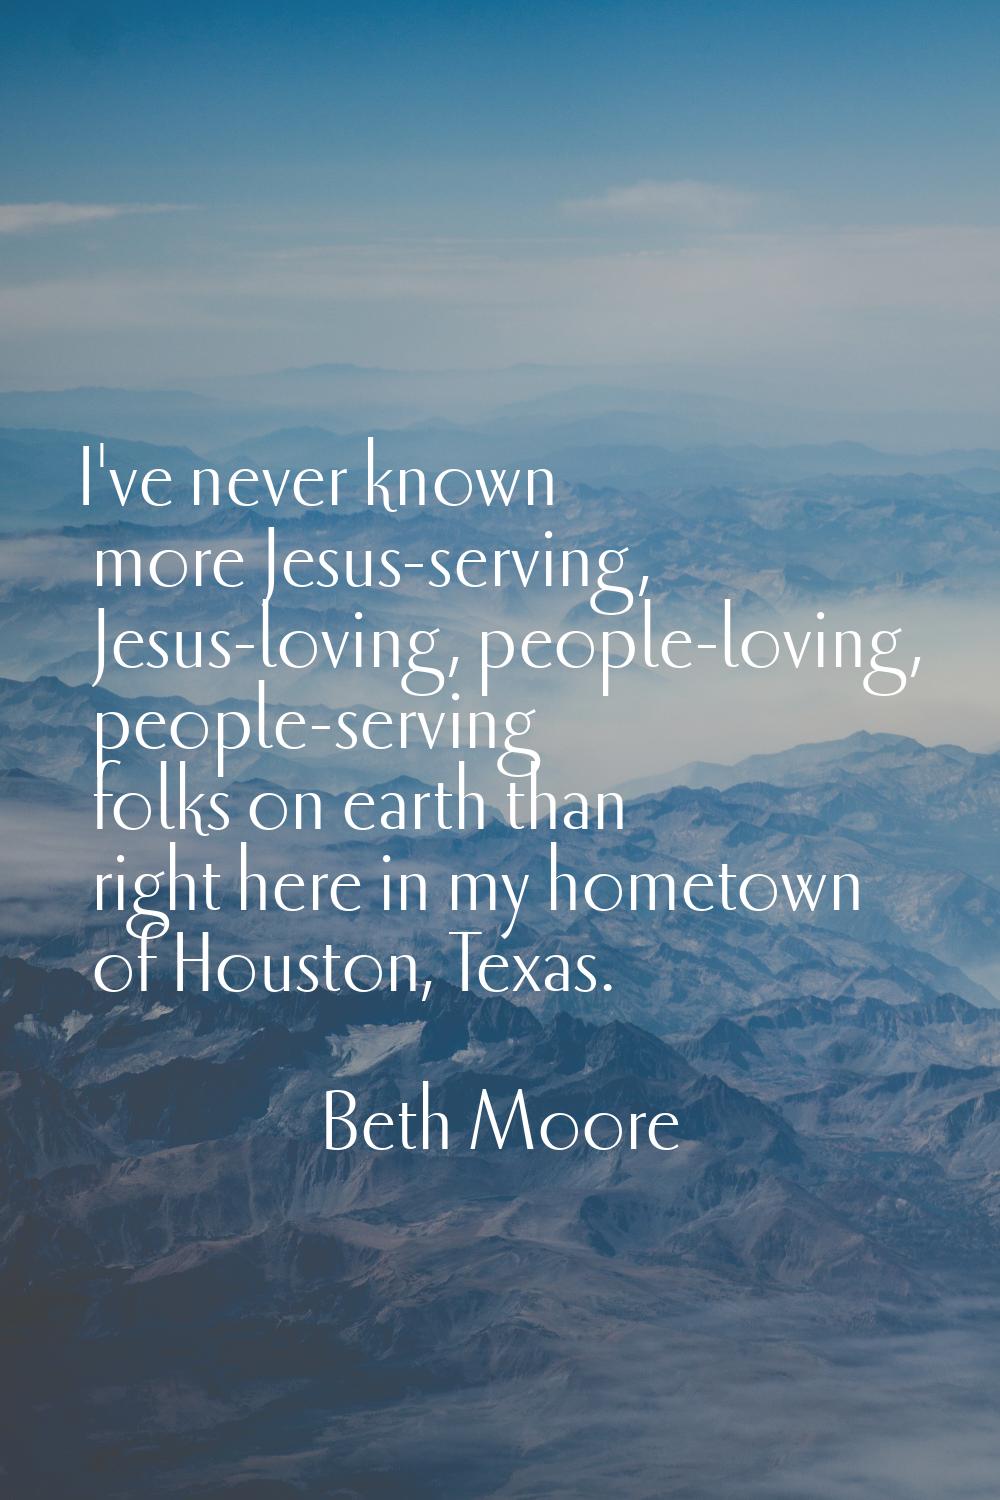 I've never known more Jesus-serving, Jesus-loving, people-loving, people-serving folks on earth tha